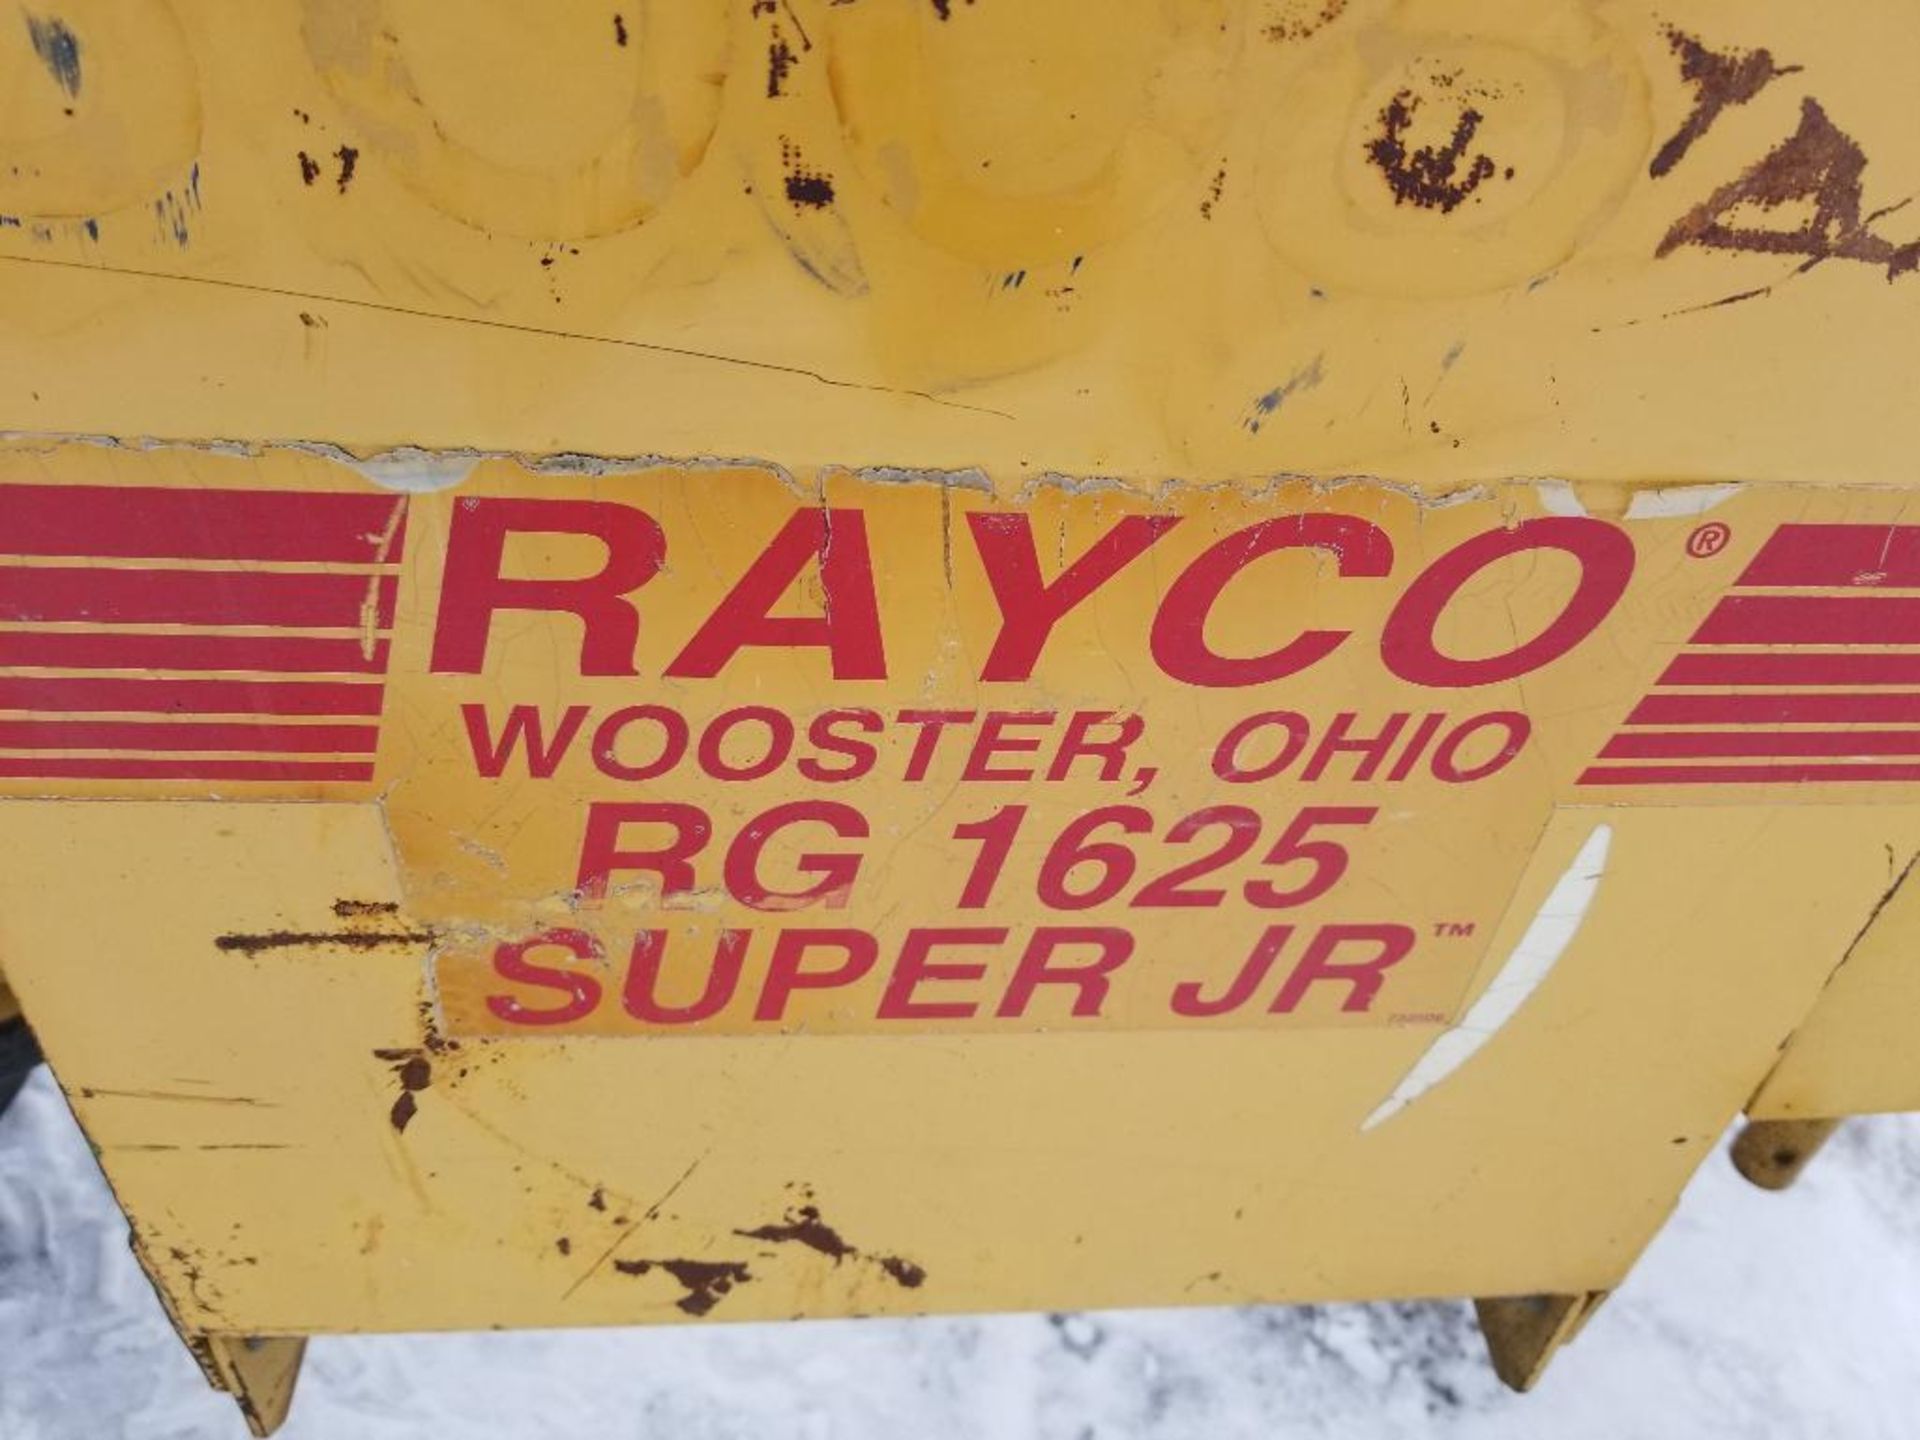 Rayco stump grinder. RG1625 super Jr. Kohler motor. 1320 hours showing on hour meter. - Image 10 of 19